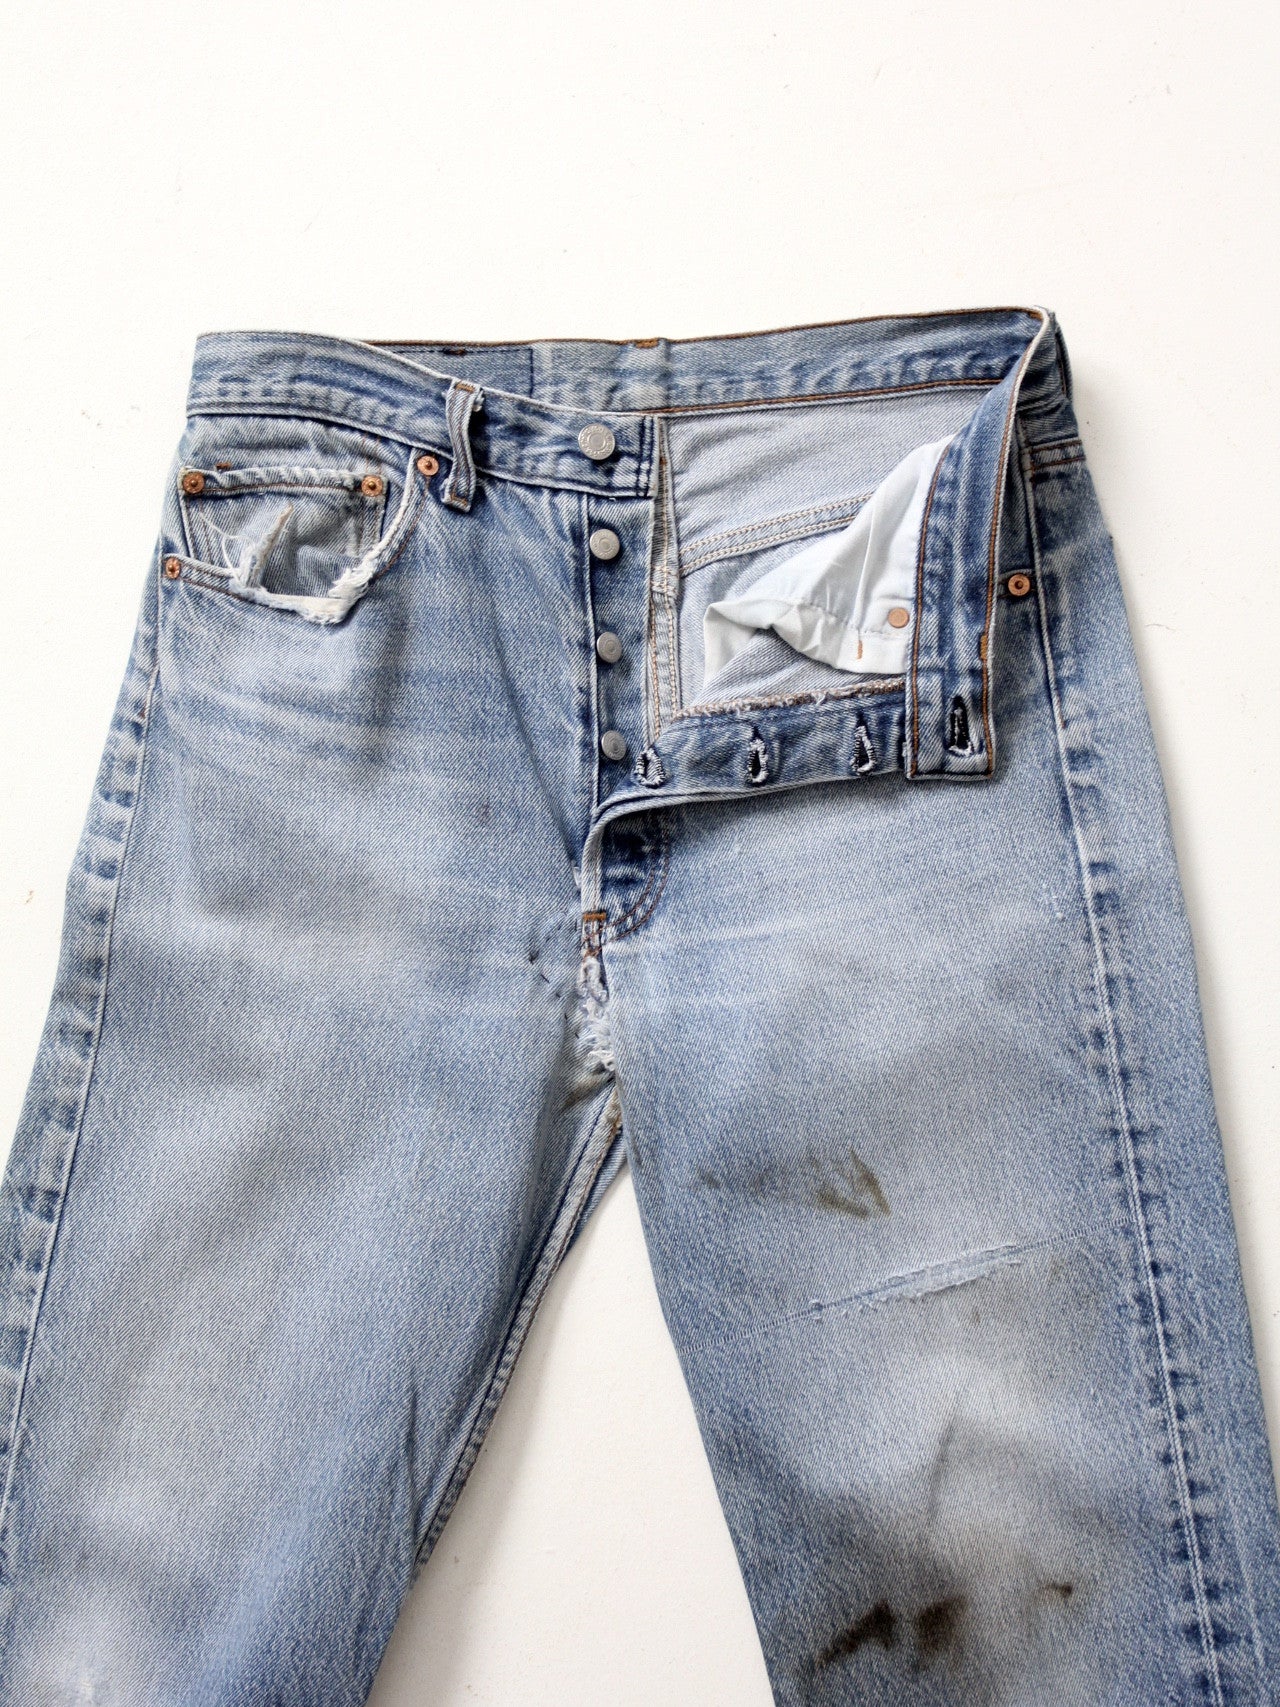 vintage Levi's 501 jeans, 31 x 34 – 86 Vintage